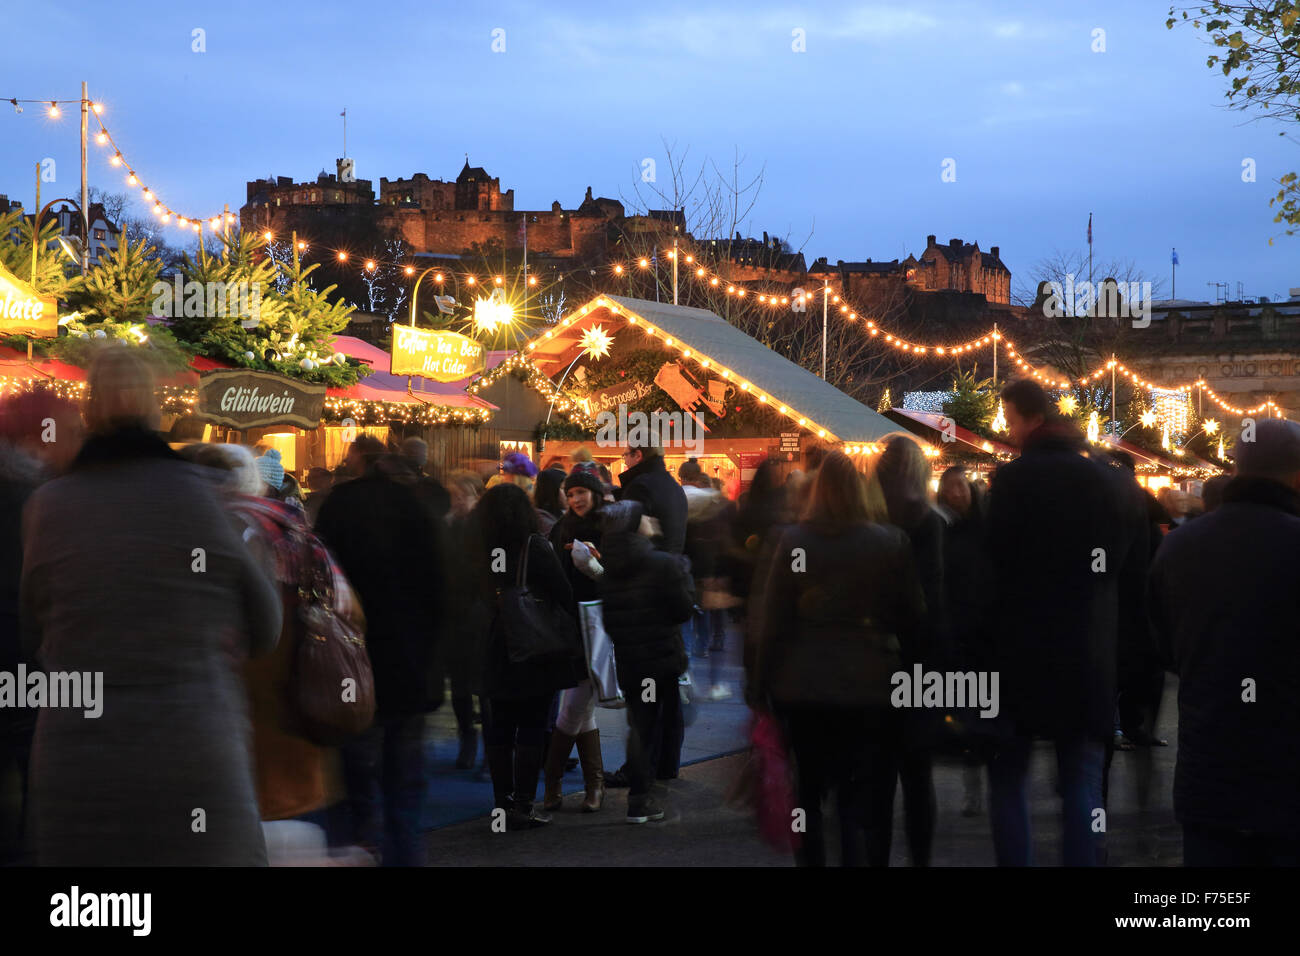 Marché de Noël à Édimbourg à l'Est des jardins de Princes Street, avec le château derrière, au crépuscule, en Ecosse, Royaume-Uni Banque D'Images